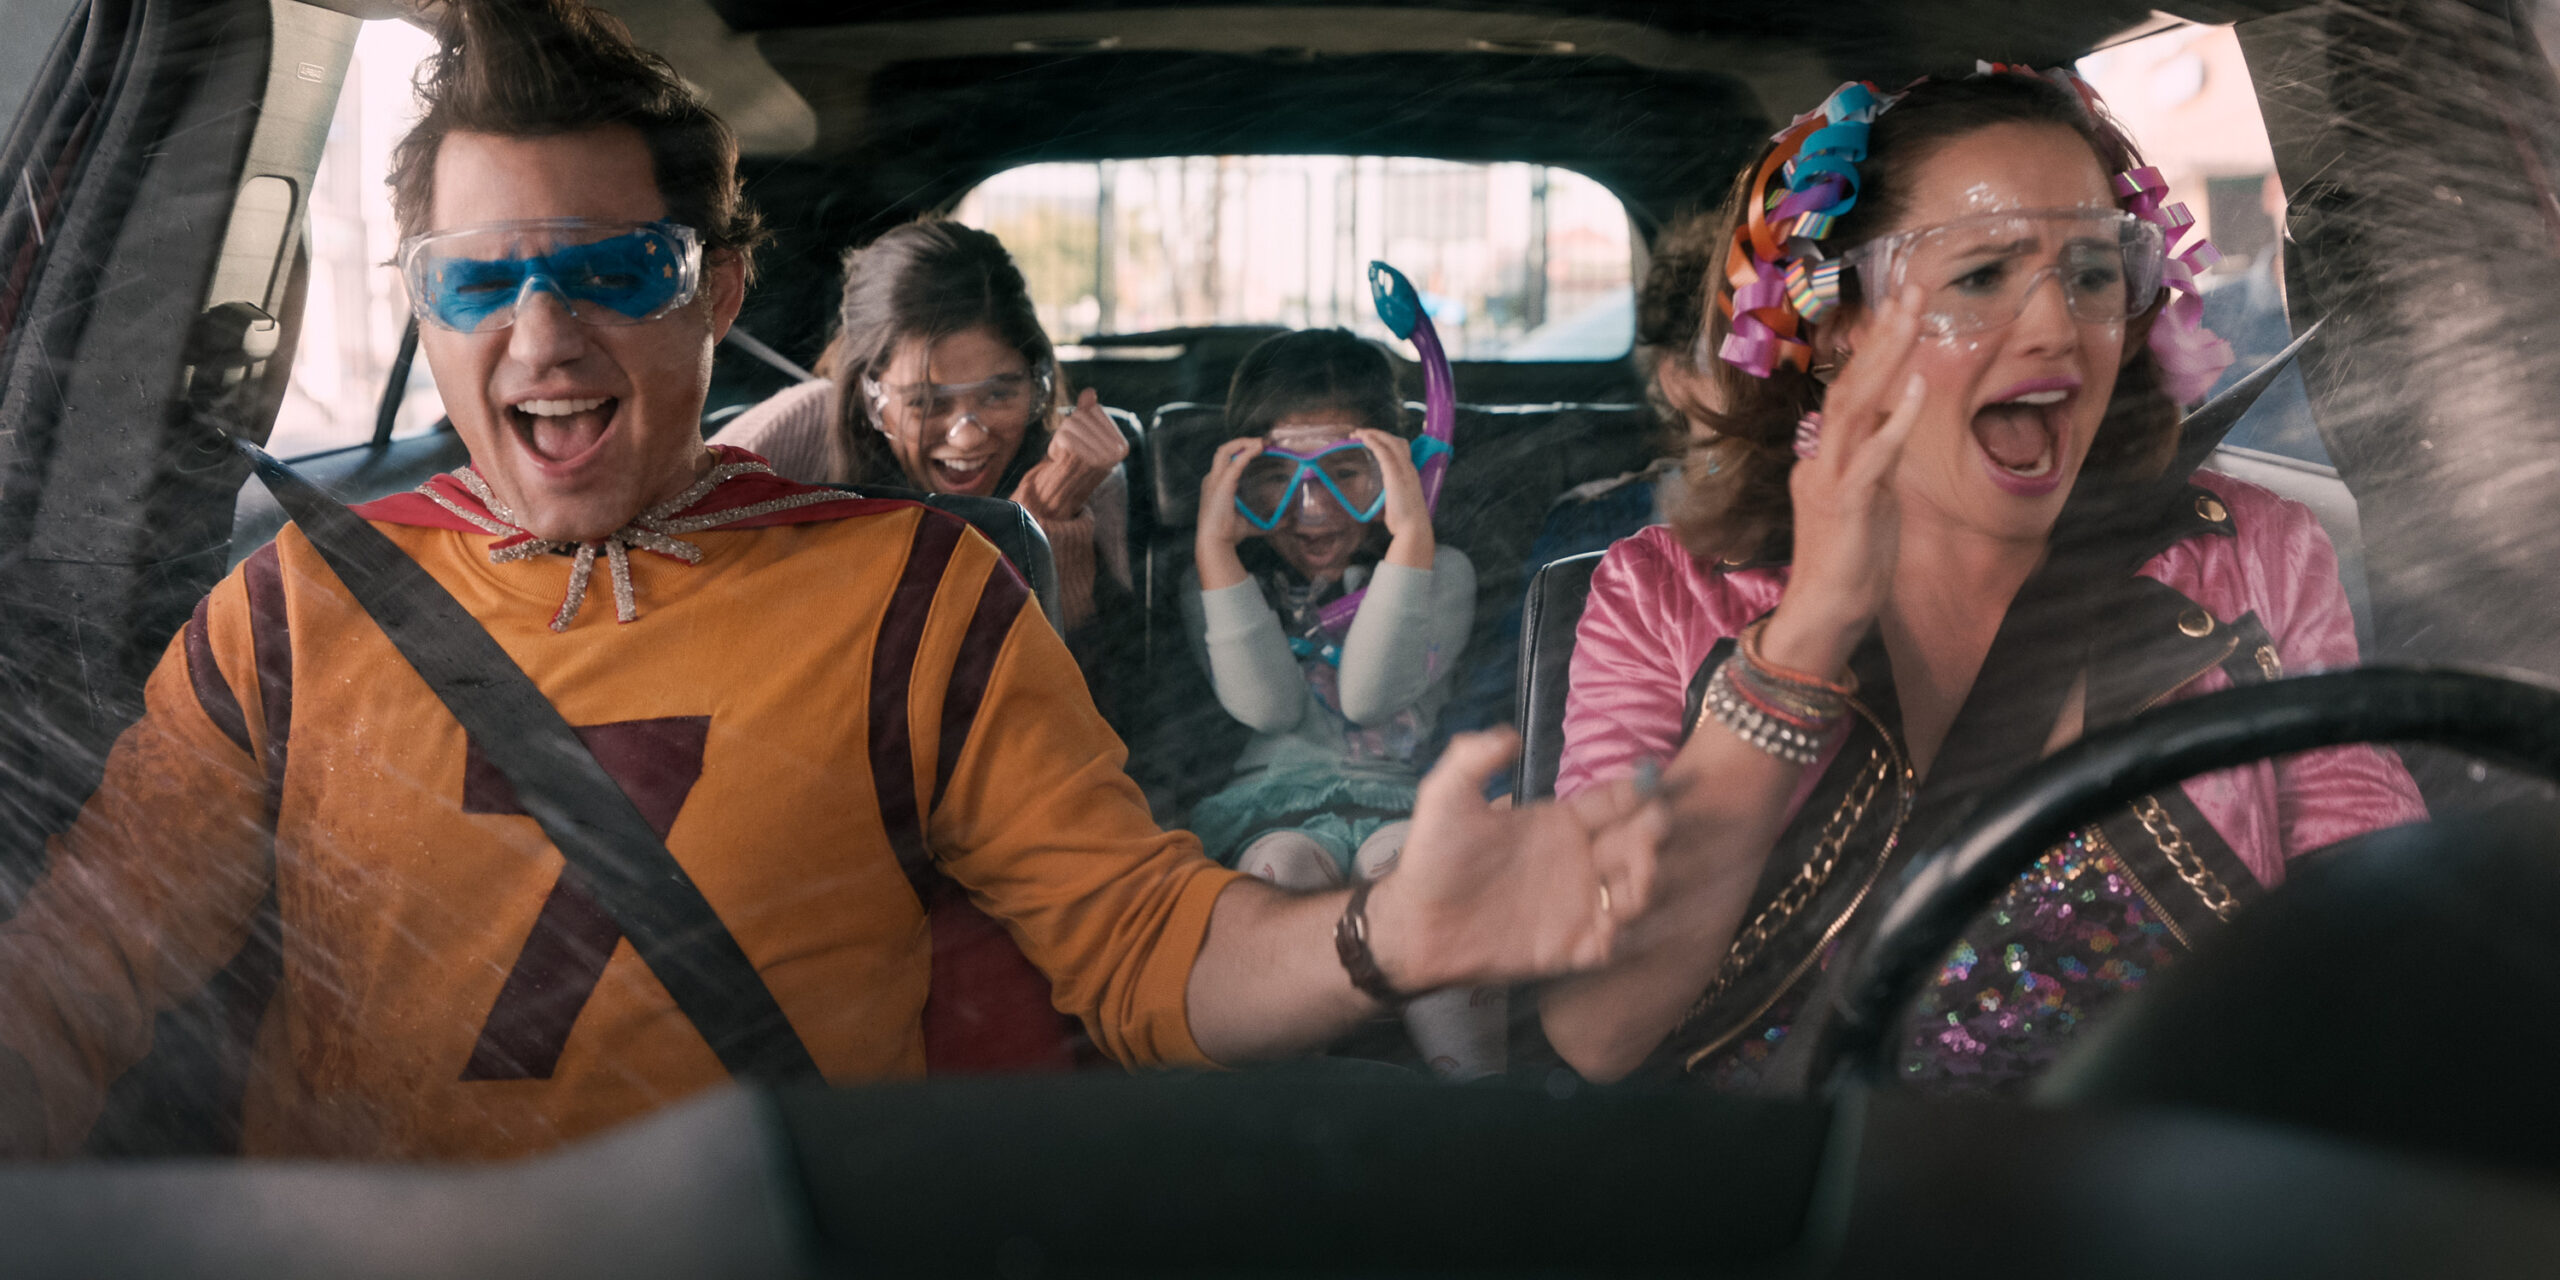 Eine Szene aus dem Film "Yes Day": Eine Familie sitzt im Auto, es herrscht Chaos